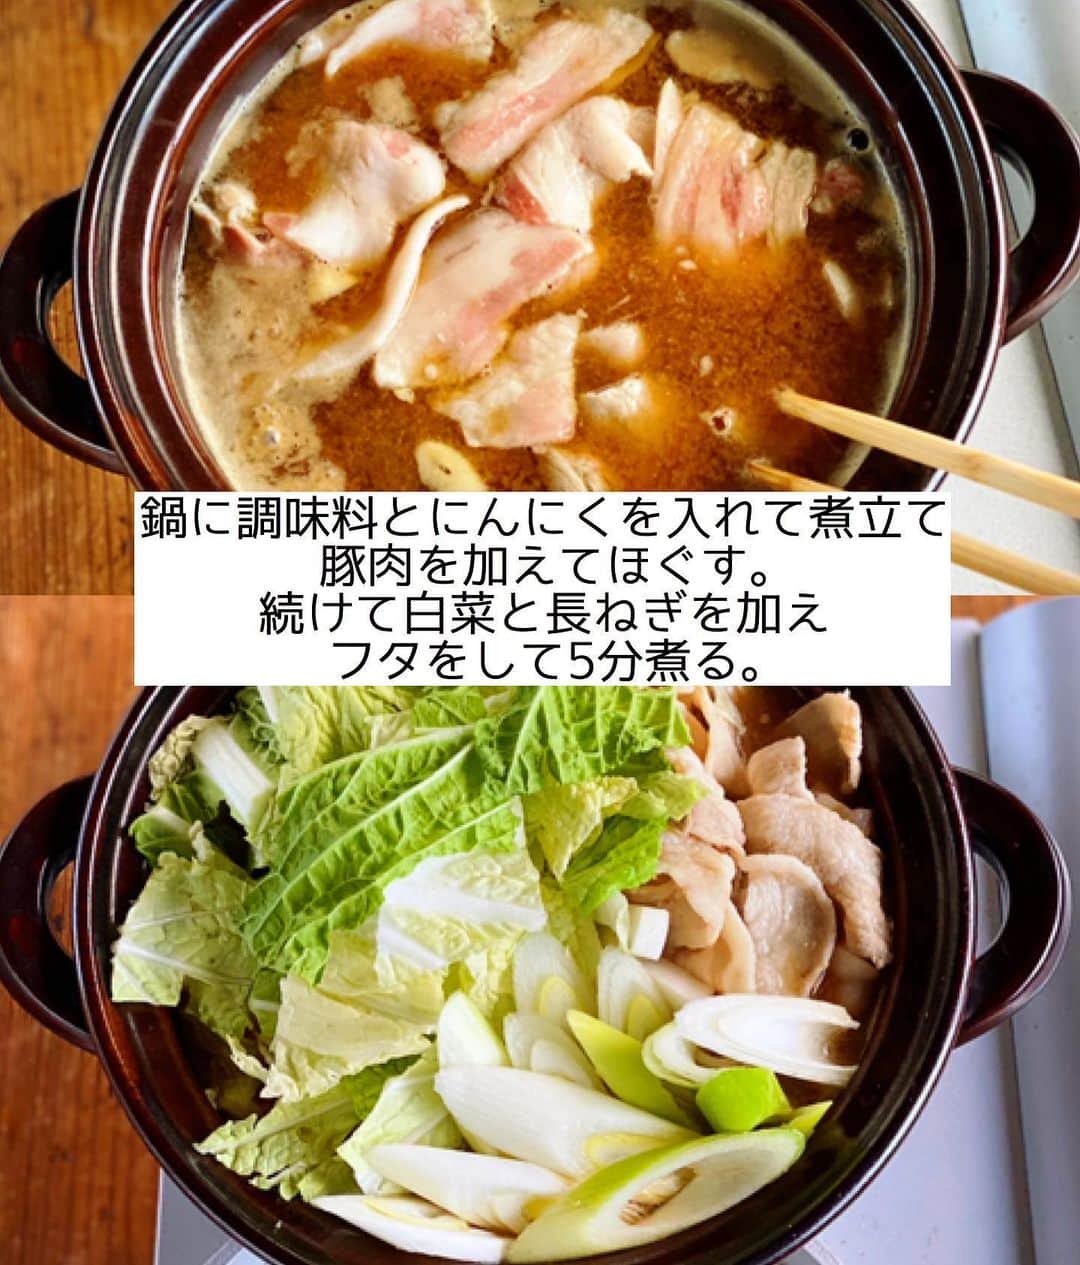 Mizuki【料理ブロガー・簡単レシピ】さんのインスタグラム写真 - (Mizuki【料理ブロガー・簡単レシピ】Instagram)「・﻿ 【#レシピ 】ーーーーーーーーーー﻿ ♡豚肉と白菜のにんにく味噌鍋♡﻿ ーーーーーーーーーーーーーーーー﻿ ﻿ ﻿ ﻿ おはようございます(*^^*)﻿ ﻿ 今日ご紹介させていただくのは﻿ \豚肉と白菜のにんにく味噌鍋/﻿ シンプルかつコク深いおつゆで﻿ 野菜がたっぷり食べられますよ〜♩﻿ ﻿ 白菜の代わりにキャベツを加えたり﻿ 具はあるもので代用OK！﻿ とっても簡単にできるので﻿ よかったらお試し下さいね(*^^*)﻿ ﻿ ﻿ ﻿ ＿＿＿＿＿＿＿＿＿＿＿＿＿＿＿＿＿＿＿＿﻿ 【2人分】﻿ 豚バラ薄切り肉...200g﻿ 白菜...1/4個(400g)﻿ 長ねぎ...1/2本﻿ にんにく...1かけ﻿ ●水...600ml﻿ ●味噌・みりん...各大2﻿ ●鶏がらスープ...大1/2﻿ ﻿ 1.豚肉は5cm長さに切る。白菜の芯は1cm幅に、葉はざく切りにする。長ねぎは1cm幅の斜め切りにする。にんにくは薄切りにする。﻿ 2.鍋に●とにんにくを入れて火にかけ、煮立ったら豚肉を加えてほぐす。続けて白菜と長ねぎを加えてフタをのせ、5分程煮る。﻿ ￣￣￣￣￣￣￣￣￣￣￣￣￣￣￣￣￣￣￣￣﻿ ﻿ ﻿ ﻿ 《ポイント》﻿ ♦︎ 吹きこぼれないよう火加減に注意して下さい☆﻿ ♦︎豚しゃぶしゃぶ用のお肉を使用しても◎﻿ ♦︎具はアレンジOK♩きのこやキャベツ、豆腐や油揚げもよく合います♩﻿ ♦︎私は合わせ味噌を使用しています♩﻿ ﻿ ﻿ ﻿ ﻿ ﻿ ﻿ ﻿ ﻿ ﻿ ⭐️発売中⭐️3刷重版が決まりました😭﻿ 本当にありがとうございます(涙)﻿ _____________________________________﻿ \15分でいただきます/﻿ 📕#Mizukiの2品献立 📕﻿ (9月24日発売・マガジンハウス)﻿ ￣￣￣￣￣￣￣￣￣￣￣￣￣￣￣￣￣﻿ ﻿ 忙しい私たちには﻿ 2品くらいがちょうどいい！﻿ 『しんどくない献立、考えました』﻿ ￣￣￣￣￣￣￣￣￣￣￣￣￣￣￣￣﻿ ﻿ ーーーーーPART.1 ーーーーー﻿ 【Mizukiのお墨つき！２品献立ベスト10】﻿ 約15分でできる10献立をご紹介！﻿ メインは全部フライパン﻿ 副菜はレンチンor混ぜるだけ♡﻿ ﻿ ーーーーーPART.2 ーーーーー﻿ 【フライパンひとつ！今夜のメインおかず】﻿ 献立の主役になる肉や魚のおかず50品！﻿ Part3の副菜と組み合わせれば﻿ 献立のバリエーションが広がりますよ♩﻿ ﻿ ーーーーー PART.3 ーーーーー﻿ 【合間に作れる！ 野菜別かんたん副菜】﻿ レンチンor和えるだけの副菜レシピを﻿ 素材別にたっぷり収録♩﻿ ﻿ ーーーーー番外編ーーーーー﻿ 【ひとつで満足！ご飯＆麺】﻿ 【具だくさん！おかずスープ】﻿ 【オーブンいらずのおやつレシピ】﻿ ￣￣￣￣￣￣￣￣￣￣￣￣￣￣￣￣￣￣﻿ (ハイライトにリンク🔗あります💗)﻿ ﻿ ﻿ ﻿ ﻿ ﻿ ＿＿＿＿＿＿＿＿＿＿＿＿＿＿＿＿＿＿﻿ 🔔テレビ出演のお知らせ🔔﻿ 【NHK Eテレ #まる得マガジン 】﻿ 2回目の放送が始まっています✨﻿ 昼(11：55〜 月-木) ﻿ 俳優の武田航平さん﻿ (@kouhei_takeda.official )と一緒に﻿ 絶品おやつから意外なランチまで﻿ たくさん作らせていただきますよ♩﻿ ﻿ ＊NHKテキスト発売中↓📕﻿ 【ホットケーキミックスで﻿ 絶品おやつ&意外なランチ】﻿ ￣￣￣￣￣￣￣￣￣￣￣￣￣￣￣￣￣￣﻿ ﻿ ﻿ ﻿ ﻿ ﻿ ＿＿＿＿＿＿＿＿＿＿＿＿＿＿＿＿＿＿﻿ レシピを作って下さった際や﻿ レシピ本についてのご投稿には﻿ タグ付け( @mizuki_31cafe )して﻿ お知らせいただけると嬉しいです😊💕﻿ ￣￣￣￣￣￣￣￣￣￣￣￣￣￣￣￣￣￣﻿ ﻿ ﻿ ﻿ ﻿ #豚肉#白菜#味噌鍋#鍋#Mizuki#簡単レシピ#時短レシピ#節約レシピ#料理#フーディーテーブル#マカロニメイト#おうちごはん#デリスタグラマー#料理好きな人と繋がりたい#食べ物#料理記録#おうちごはんlover#写真好きな人と繋がりたい#foodpic#cooking#recipe#lin_stagrammer#foodporn#yummy#f52grams#豚肉と白菜のにんにく味噌鍋m」12月1日 7時48分 - mizuki_31cafe